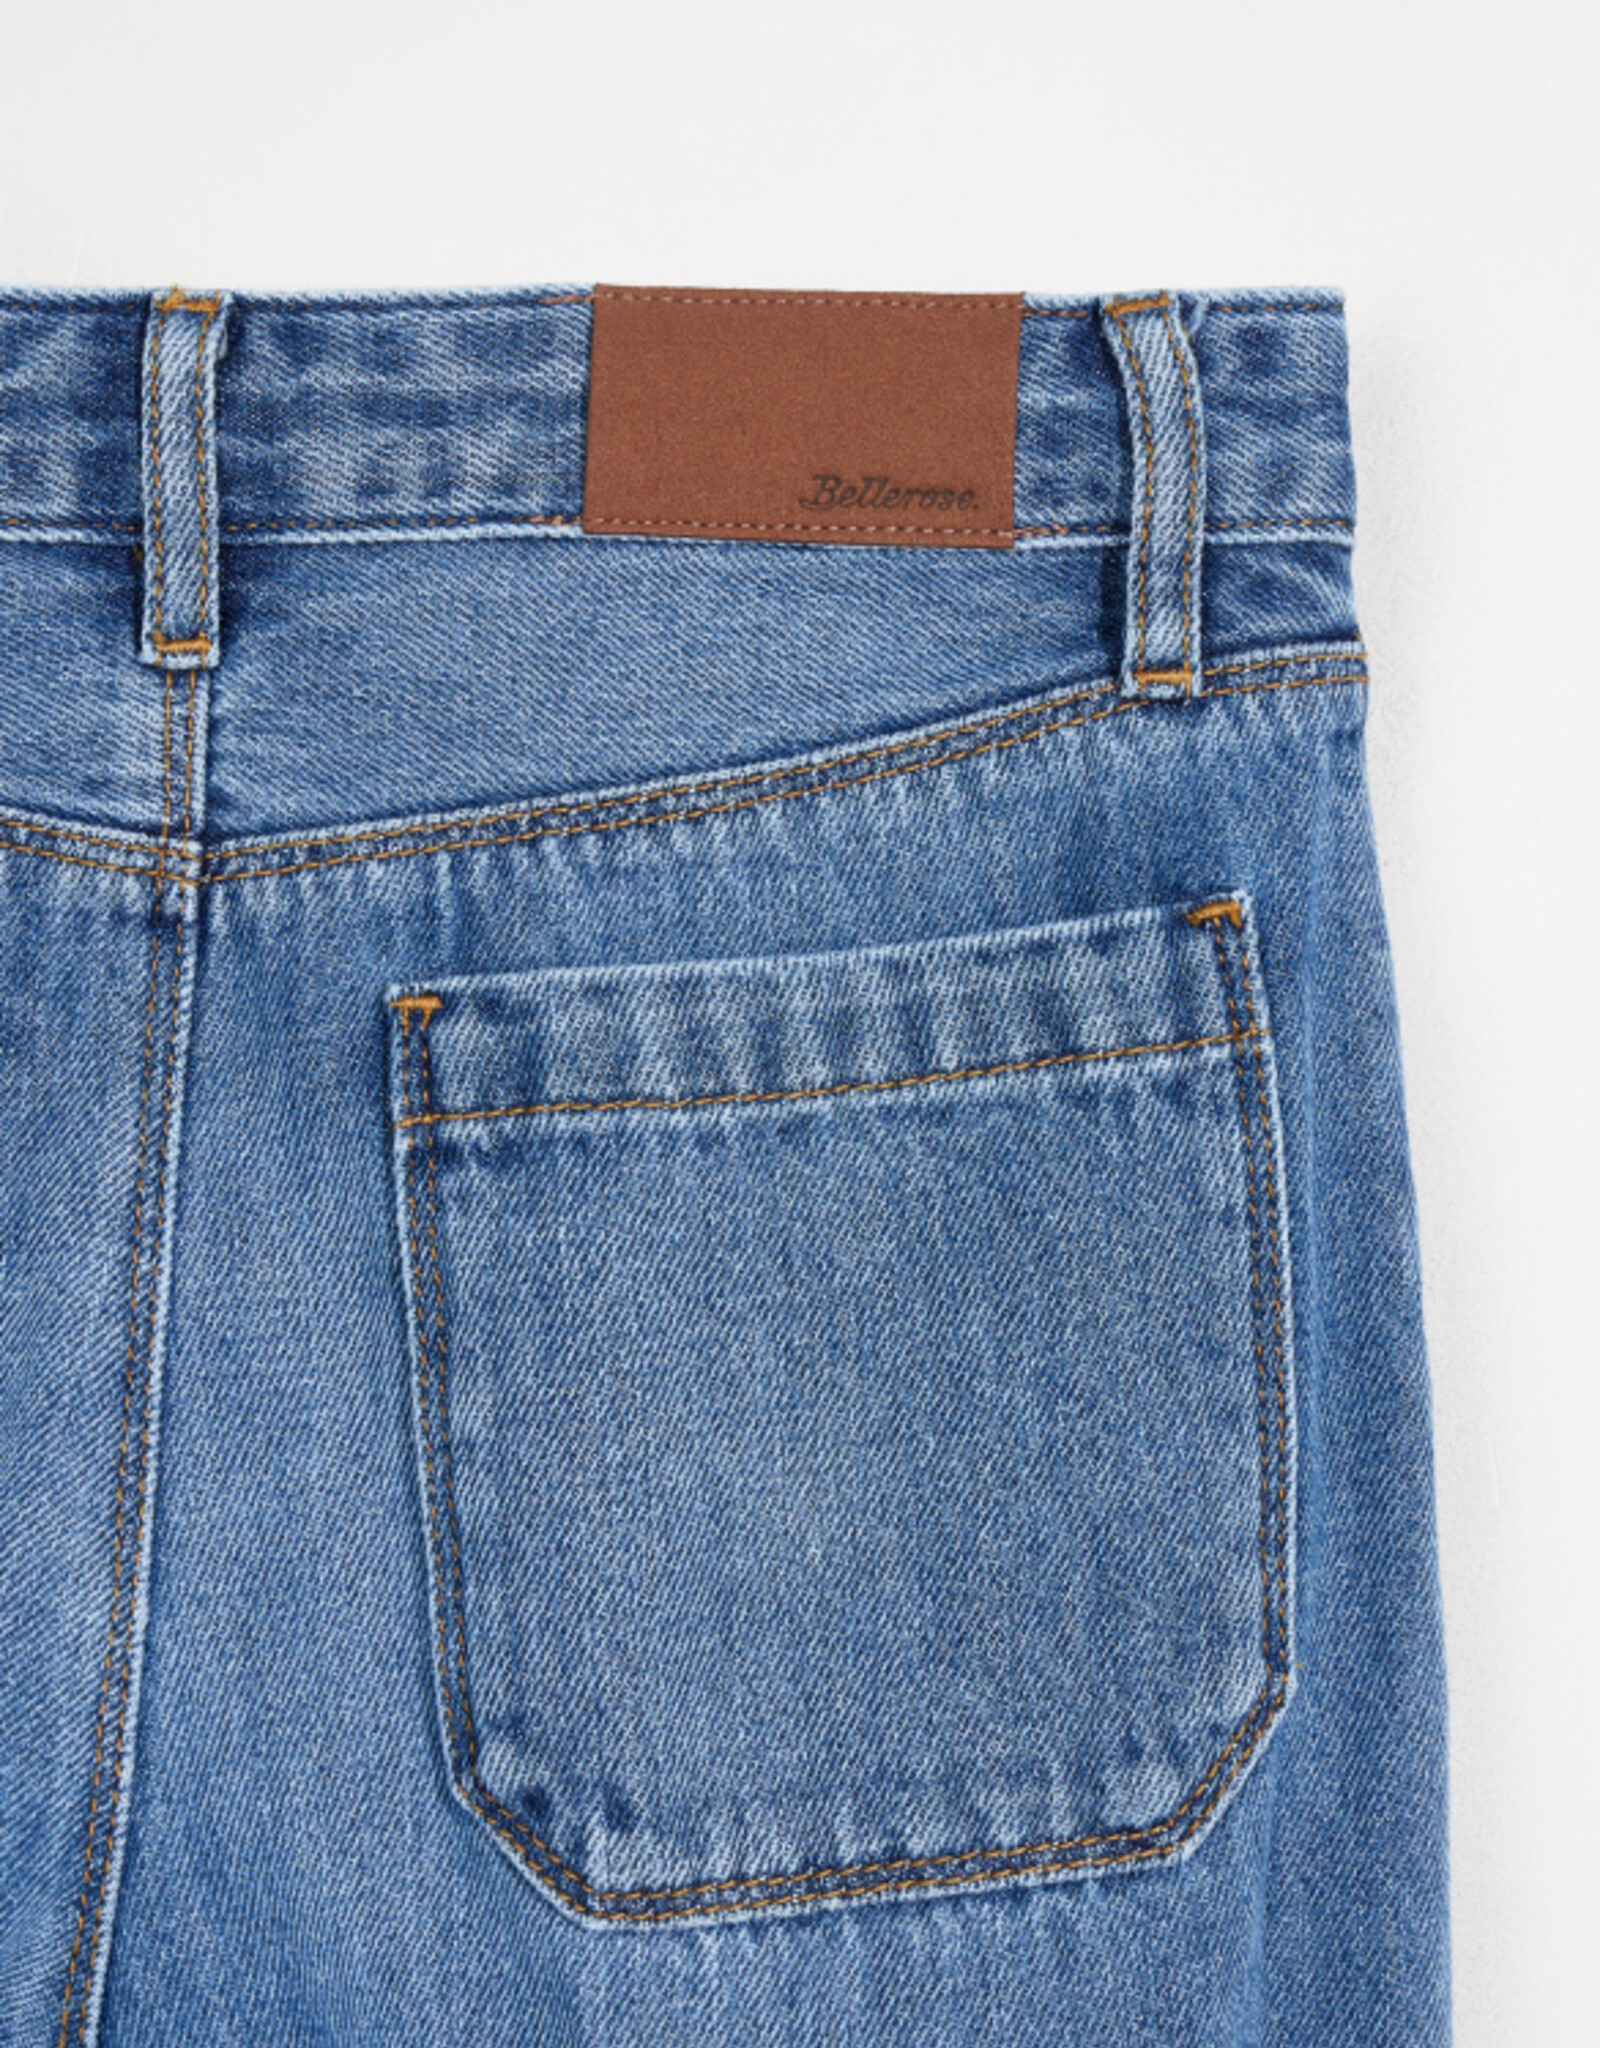 BELLEROSE BELLEROSE Pepy31 md blue jeans